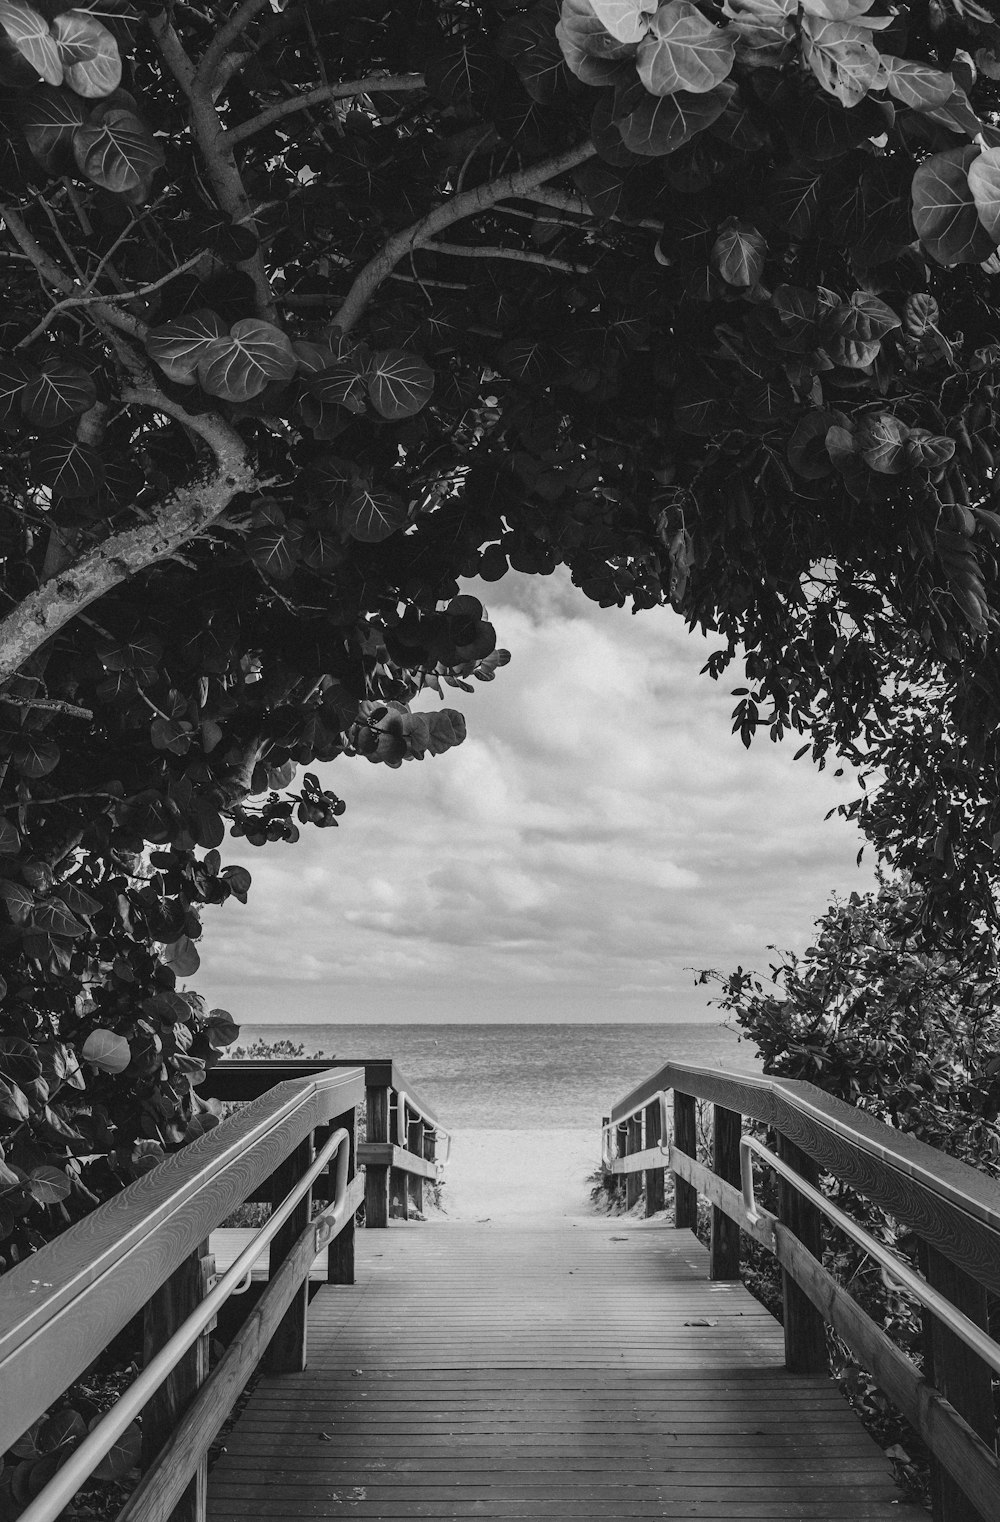 Fotografía en escala de grises de muelle de madera cerca de árboles con vistas al mar